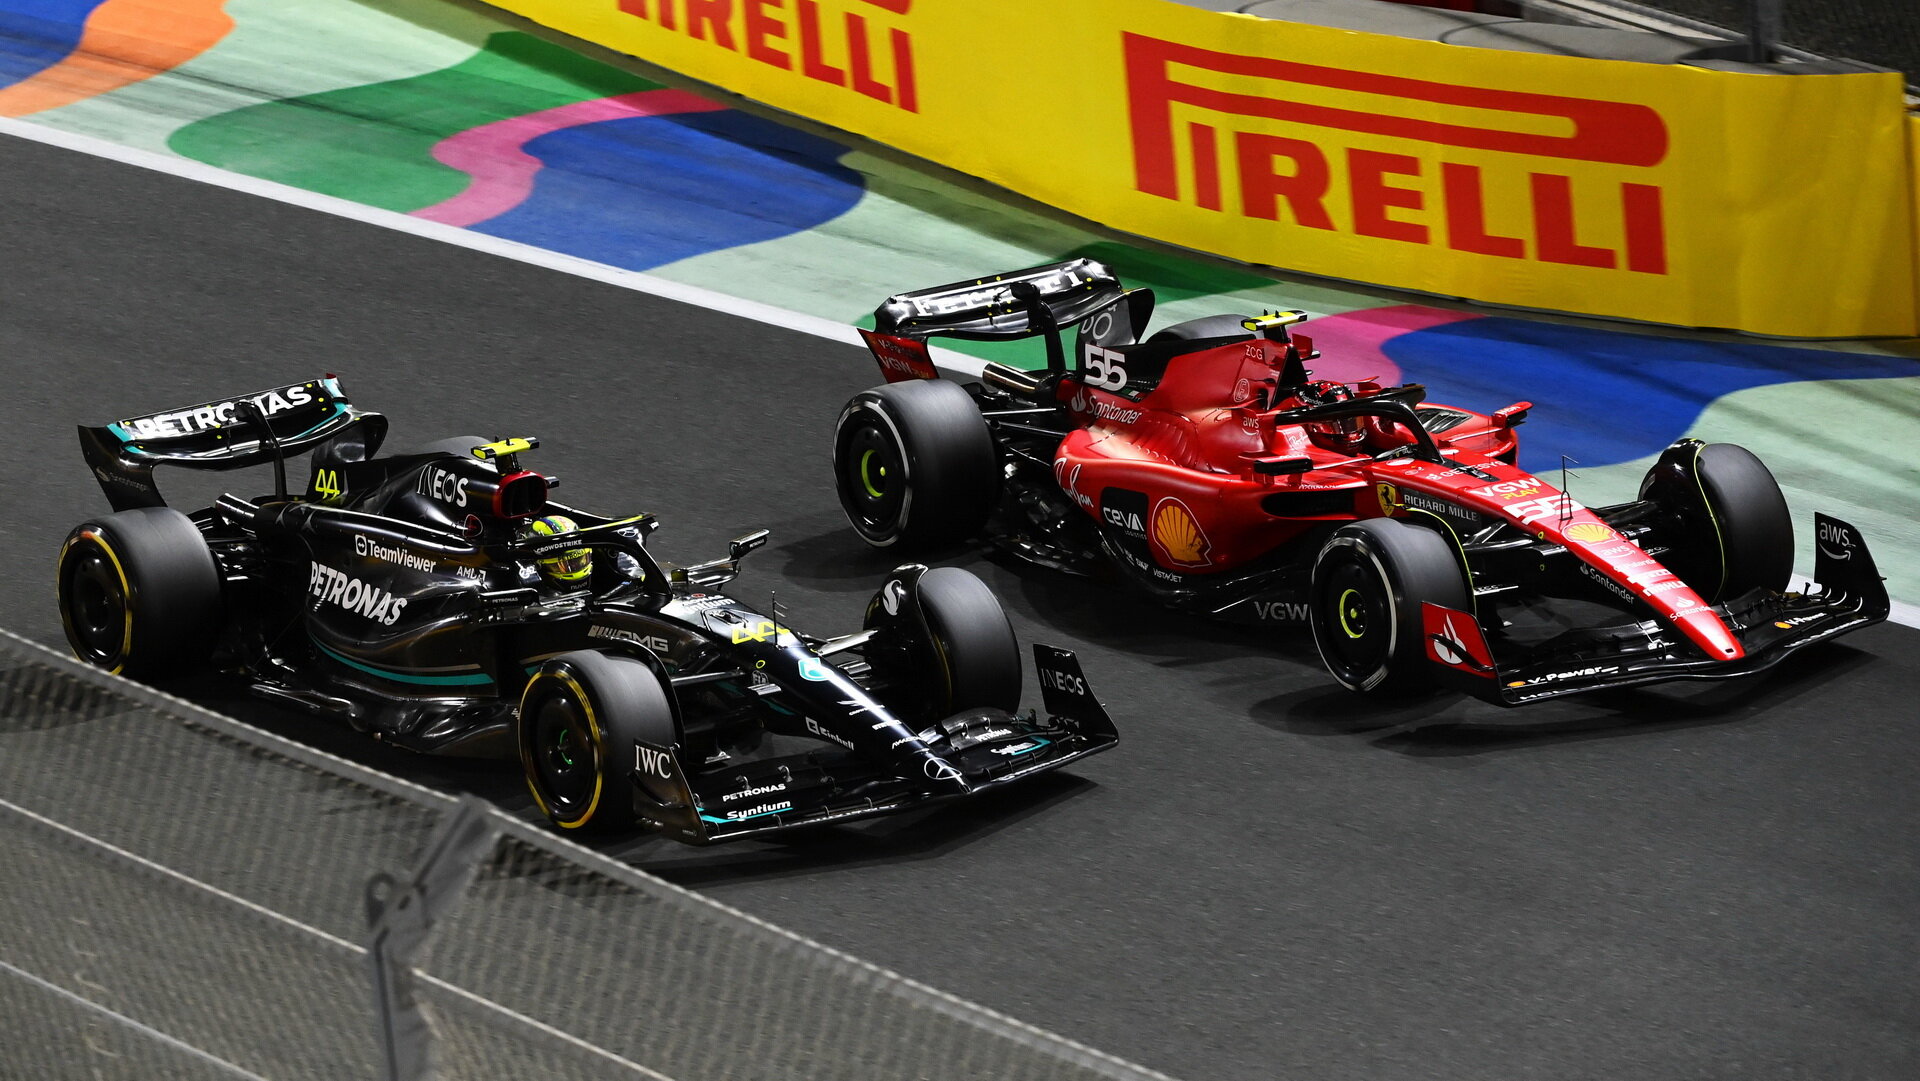 Boj až do posledního kola - Mercedes versus Ferrari